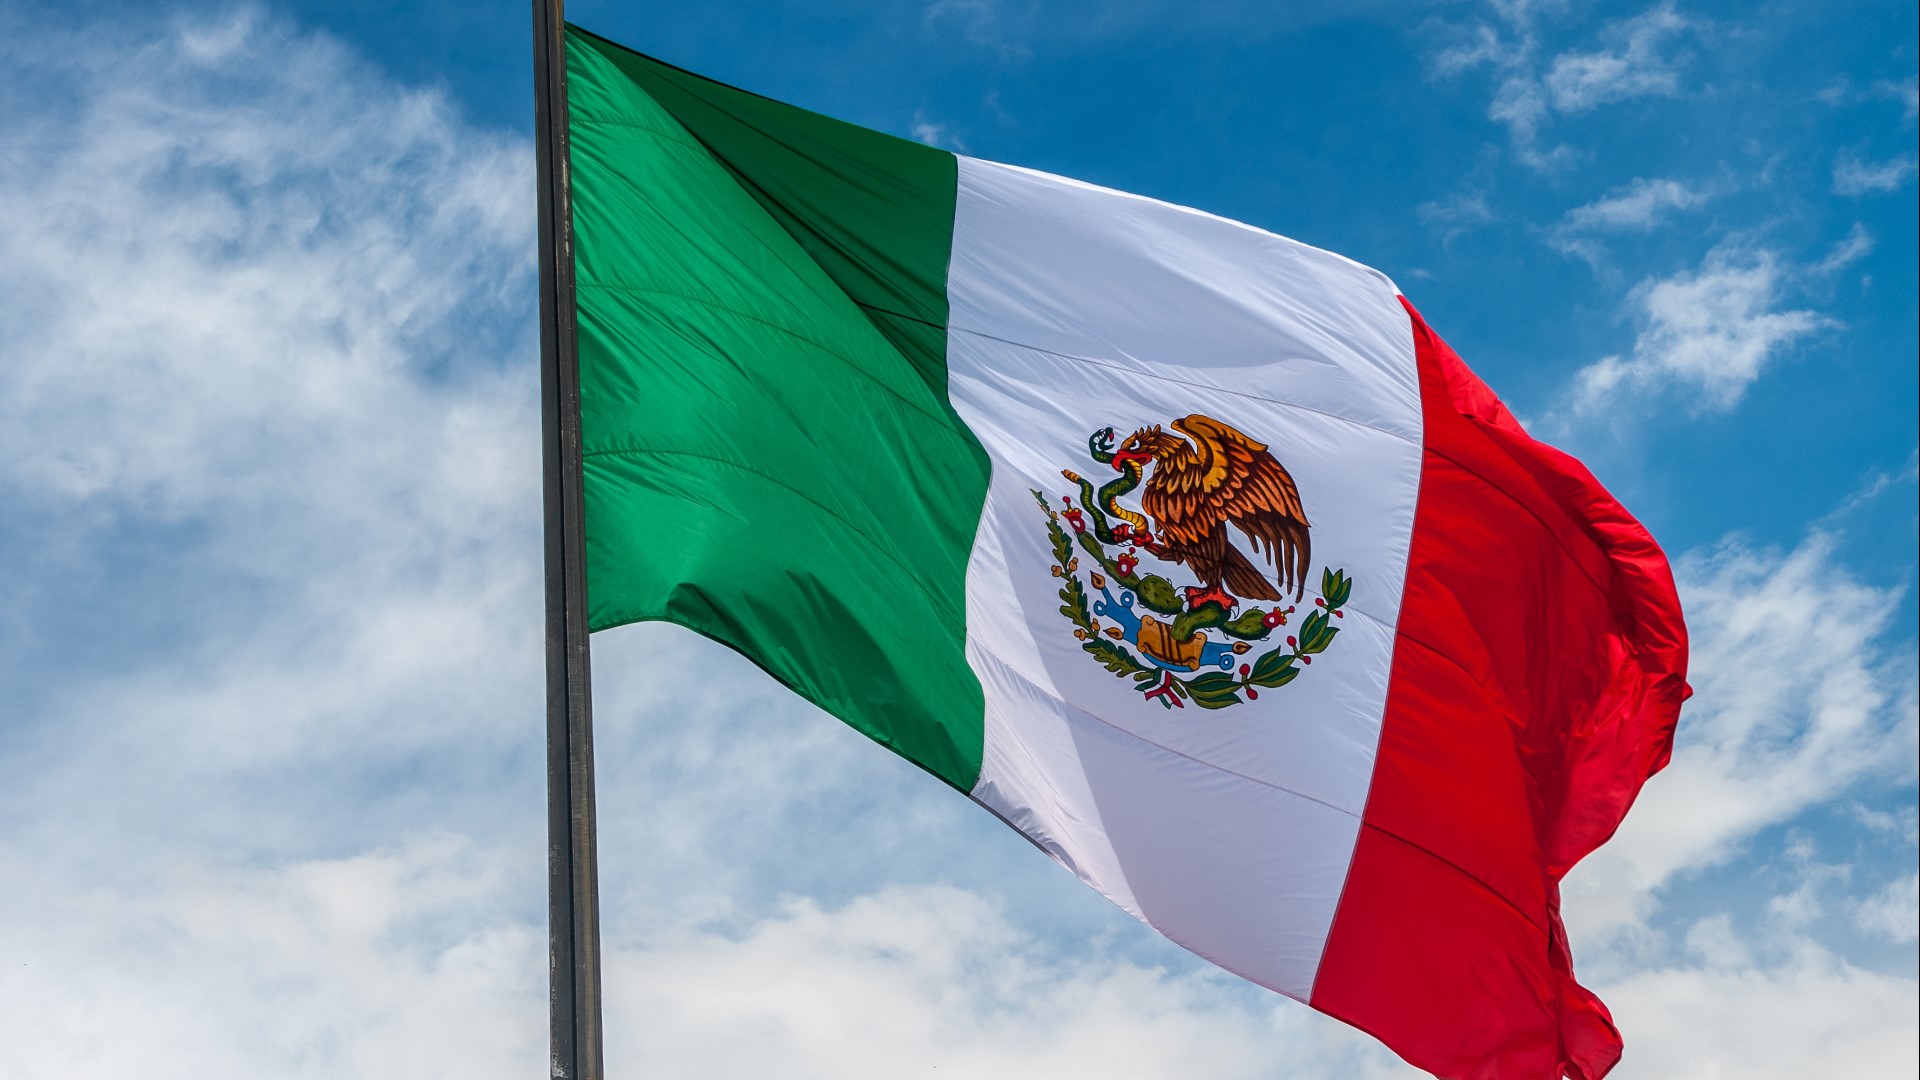 En 1821 se proclamó el “Plan de Iguala” y la bandera del Ejercito Trigarante, se adquirió como símbolo patrio del país azteca.